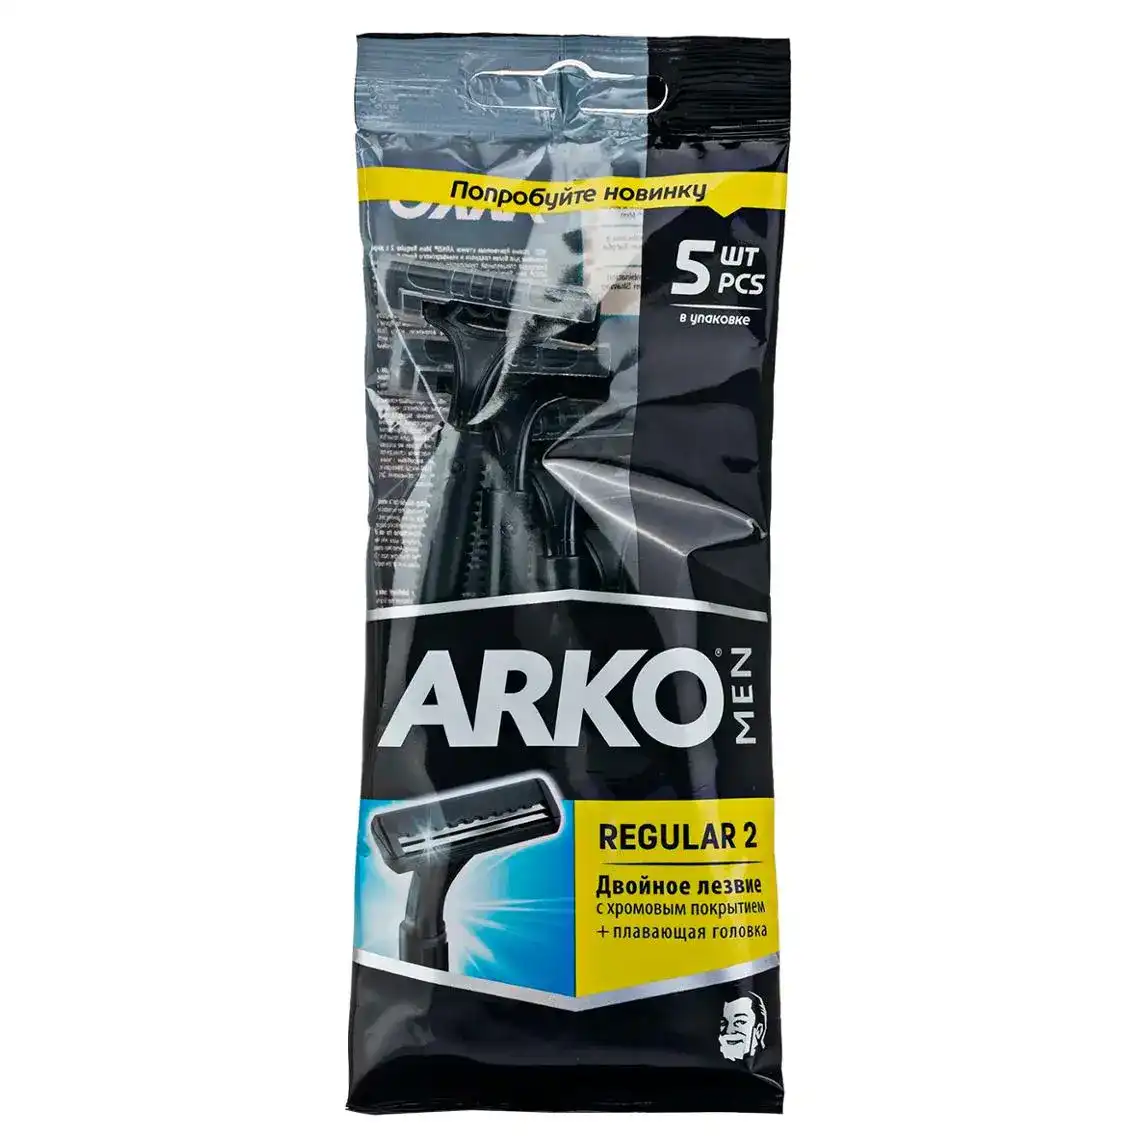 Станки для гоління Arko Regular 2 подвійне лезо 5 шт